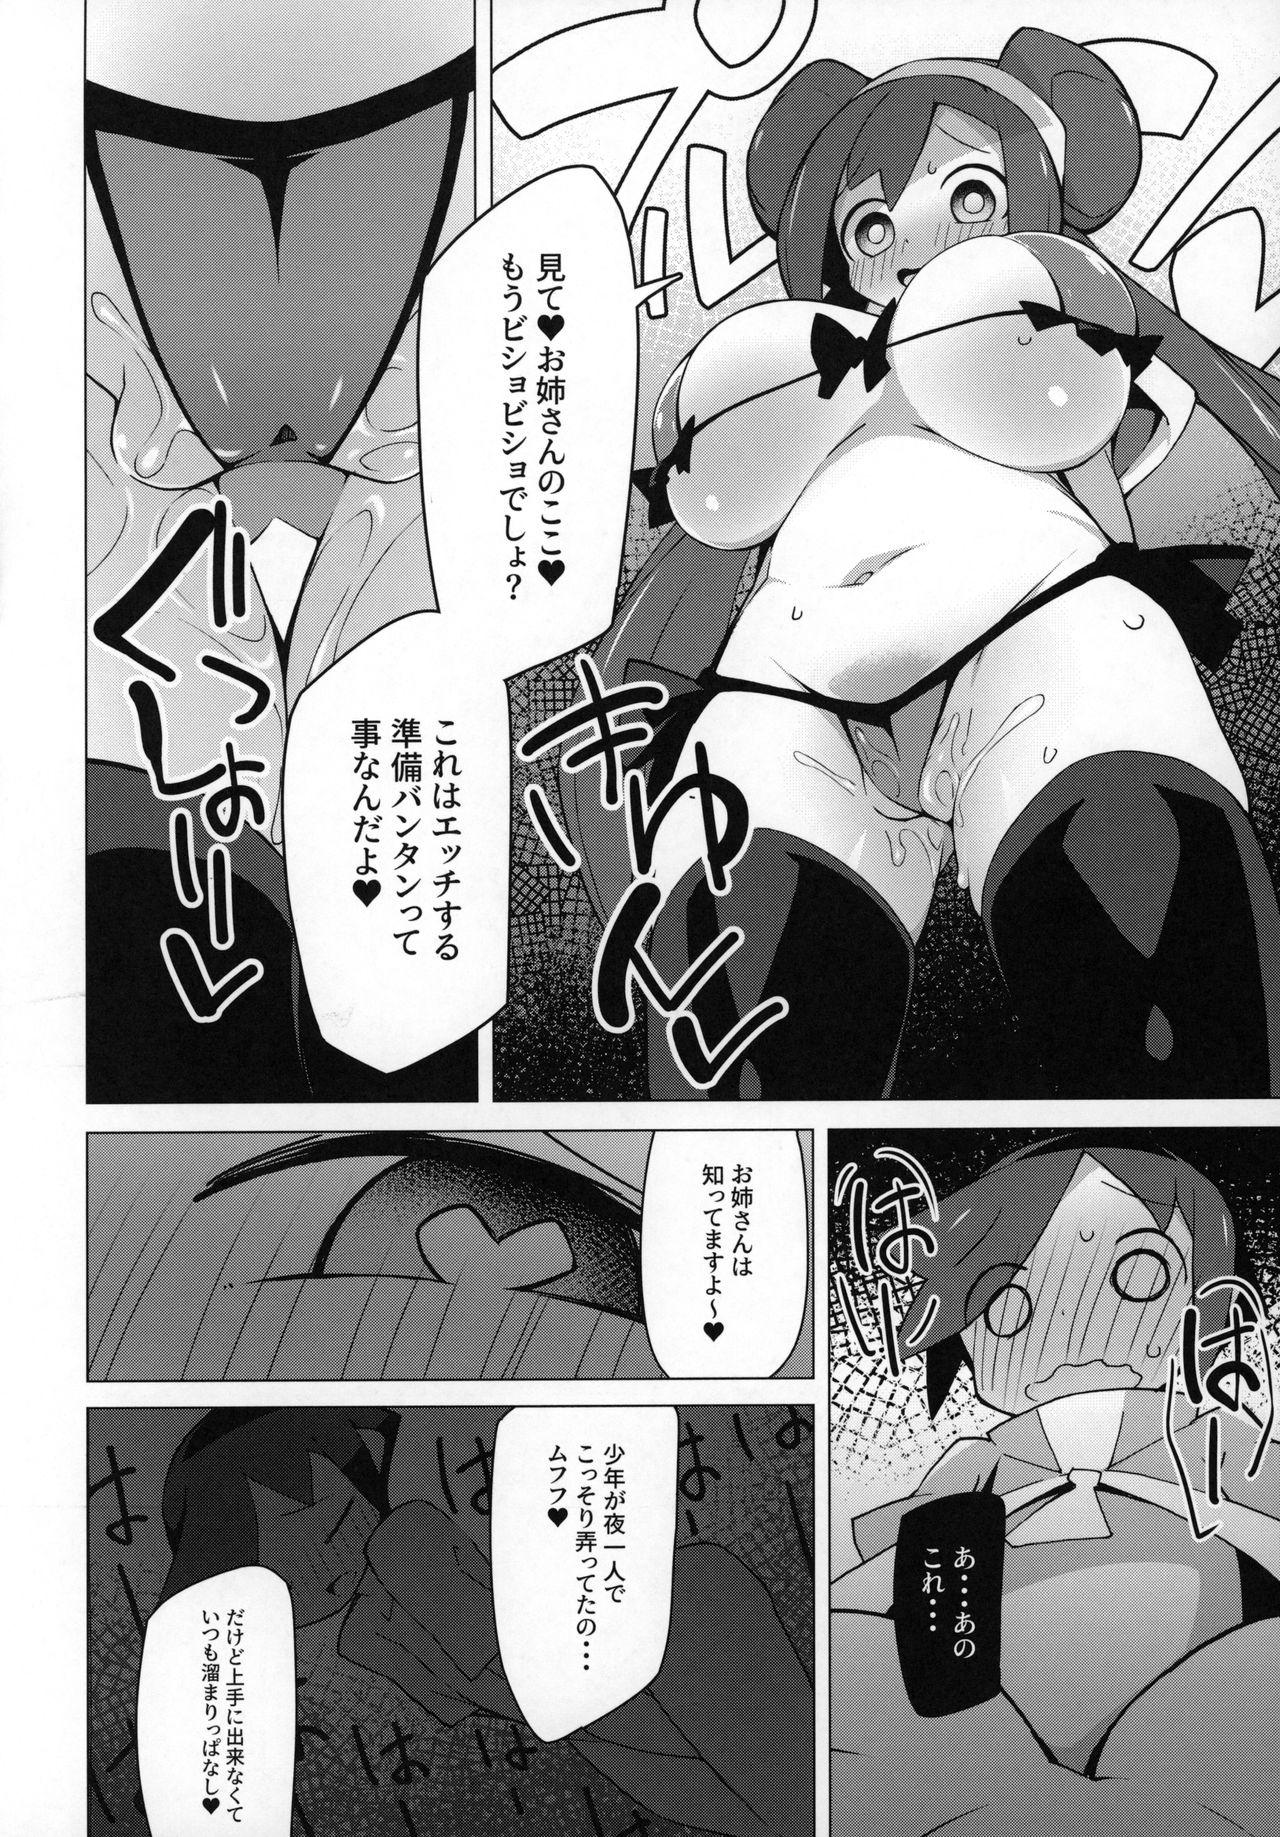 Blowjob Contest Marushii 2 - Pokemon Scene - Page 5